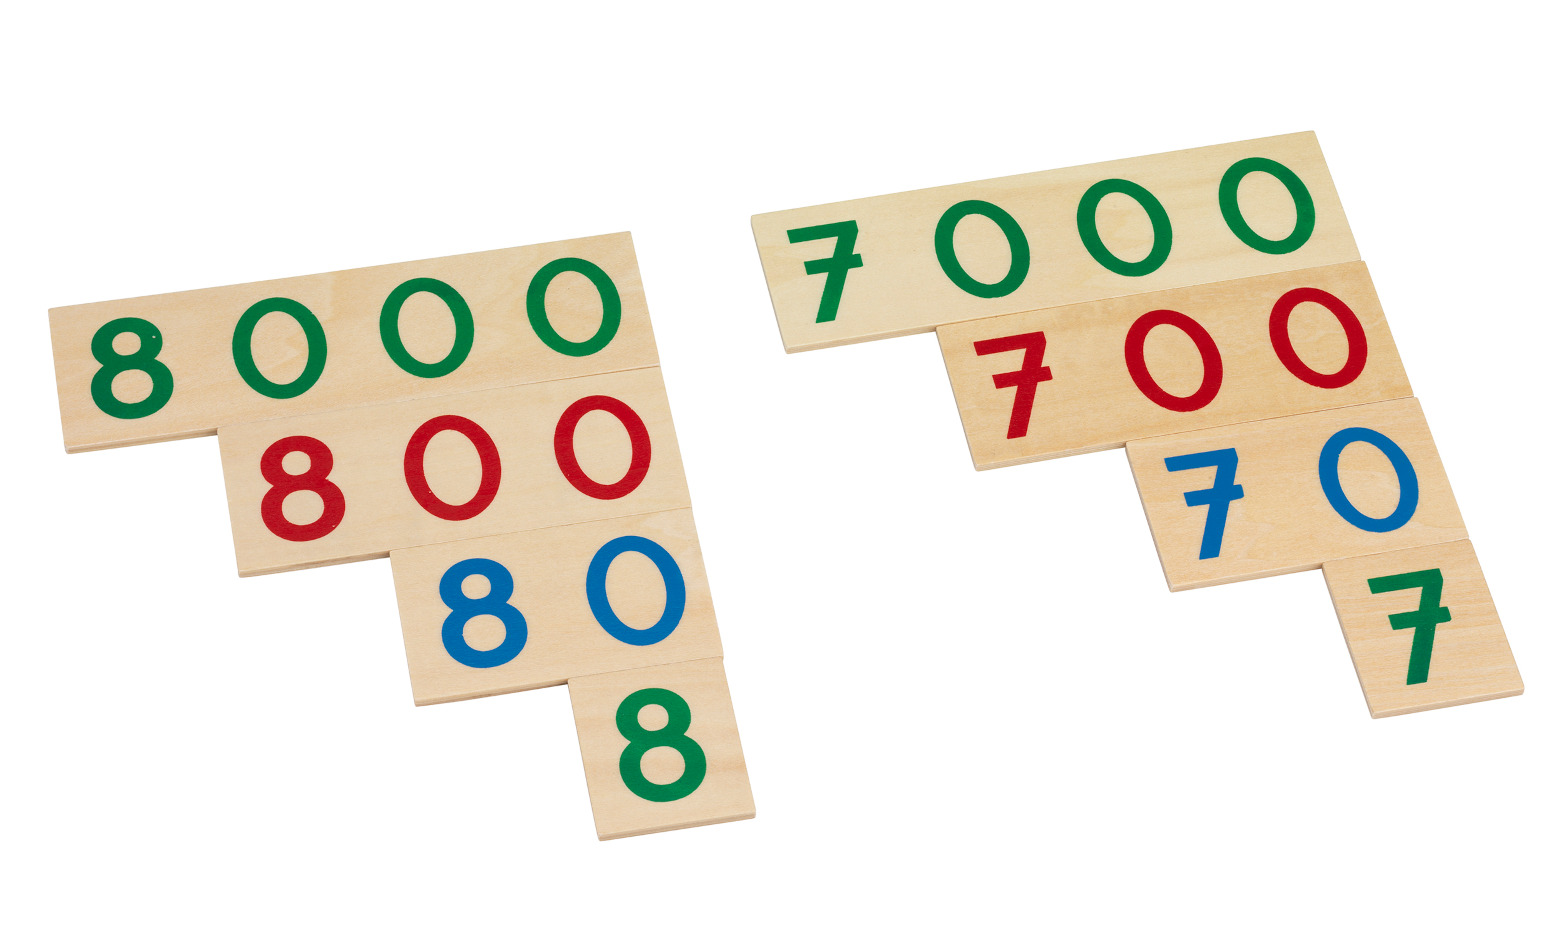 Montessori pedagoogika matemaatika õppevahend puidusts numbriplaadid numbritahvlid karbiga